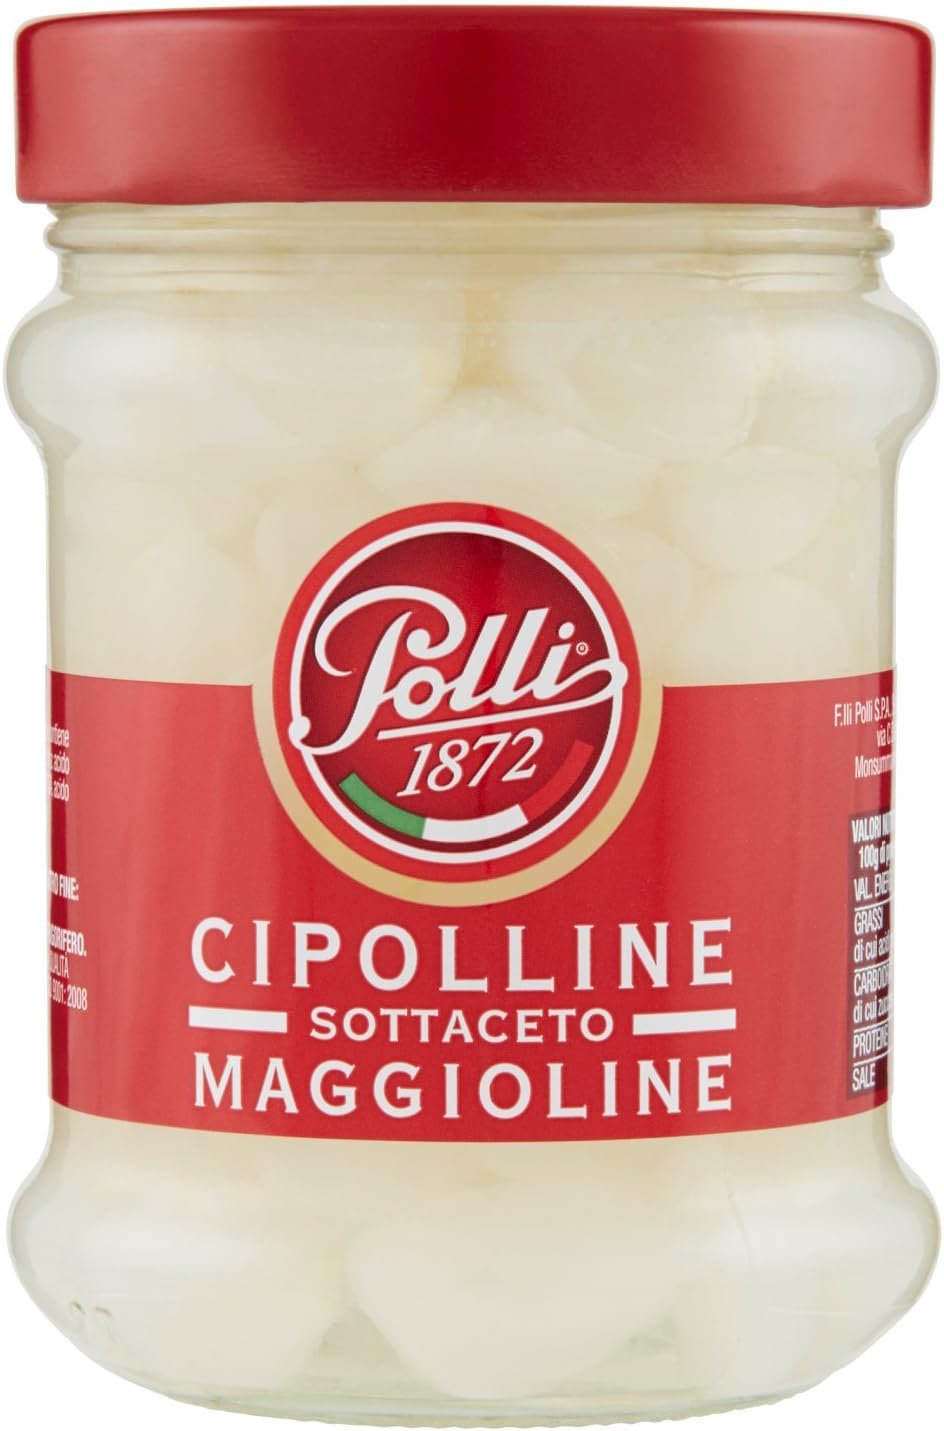 Polli Cipolline Maggioline Sottaceto - 300 g